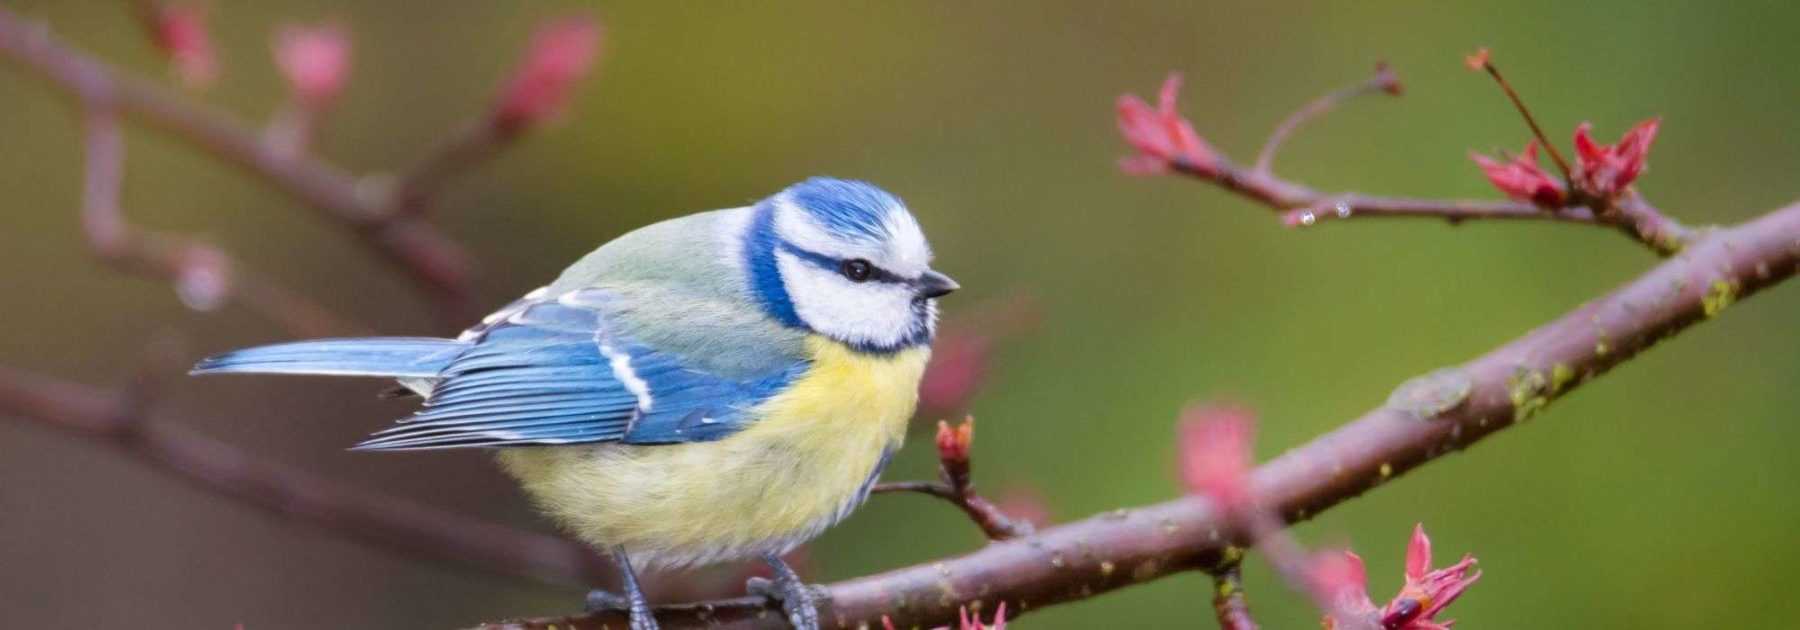 Boule de graisse pour oiseau : tuto et règles à respecter - Faire découvrir  l'écologie aux enfants